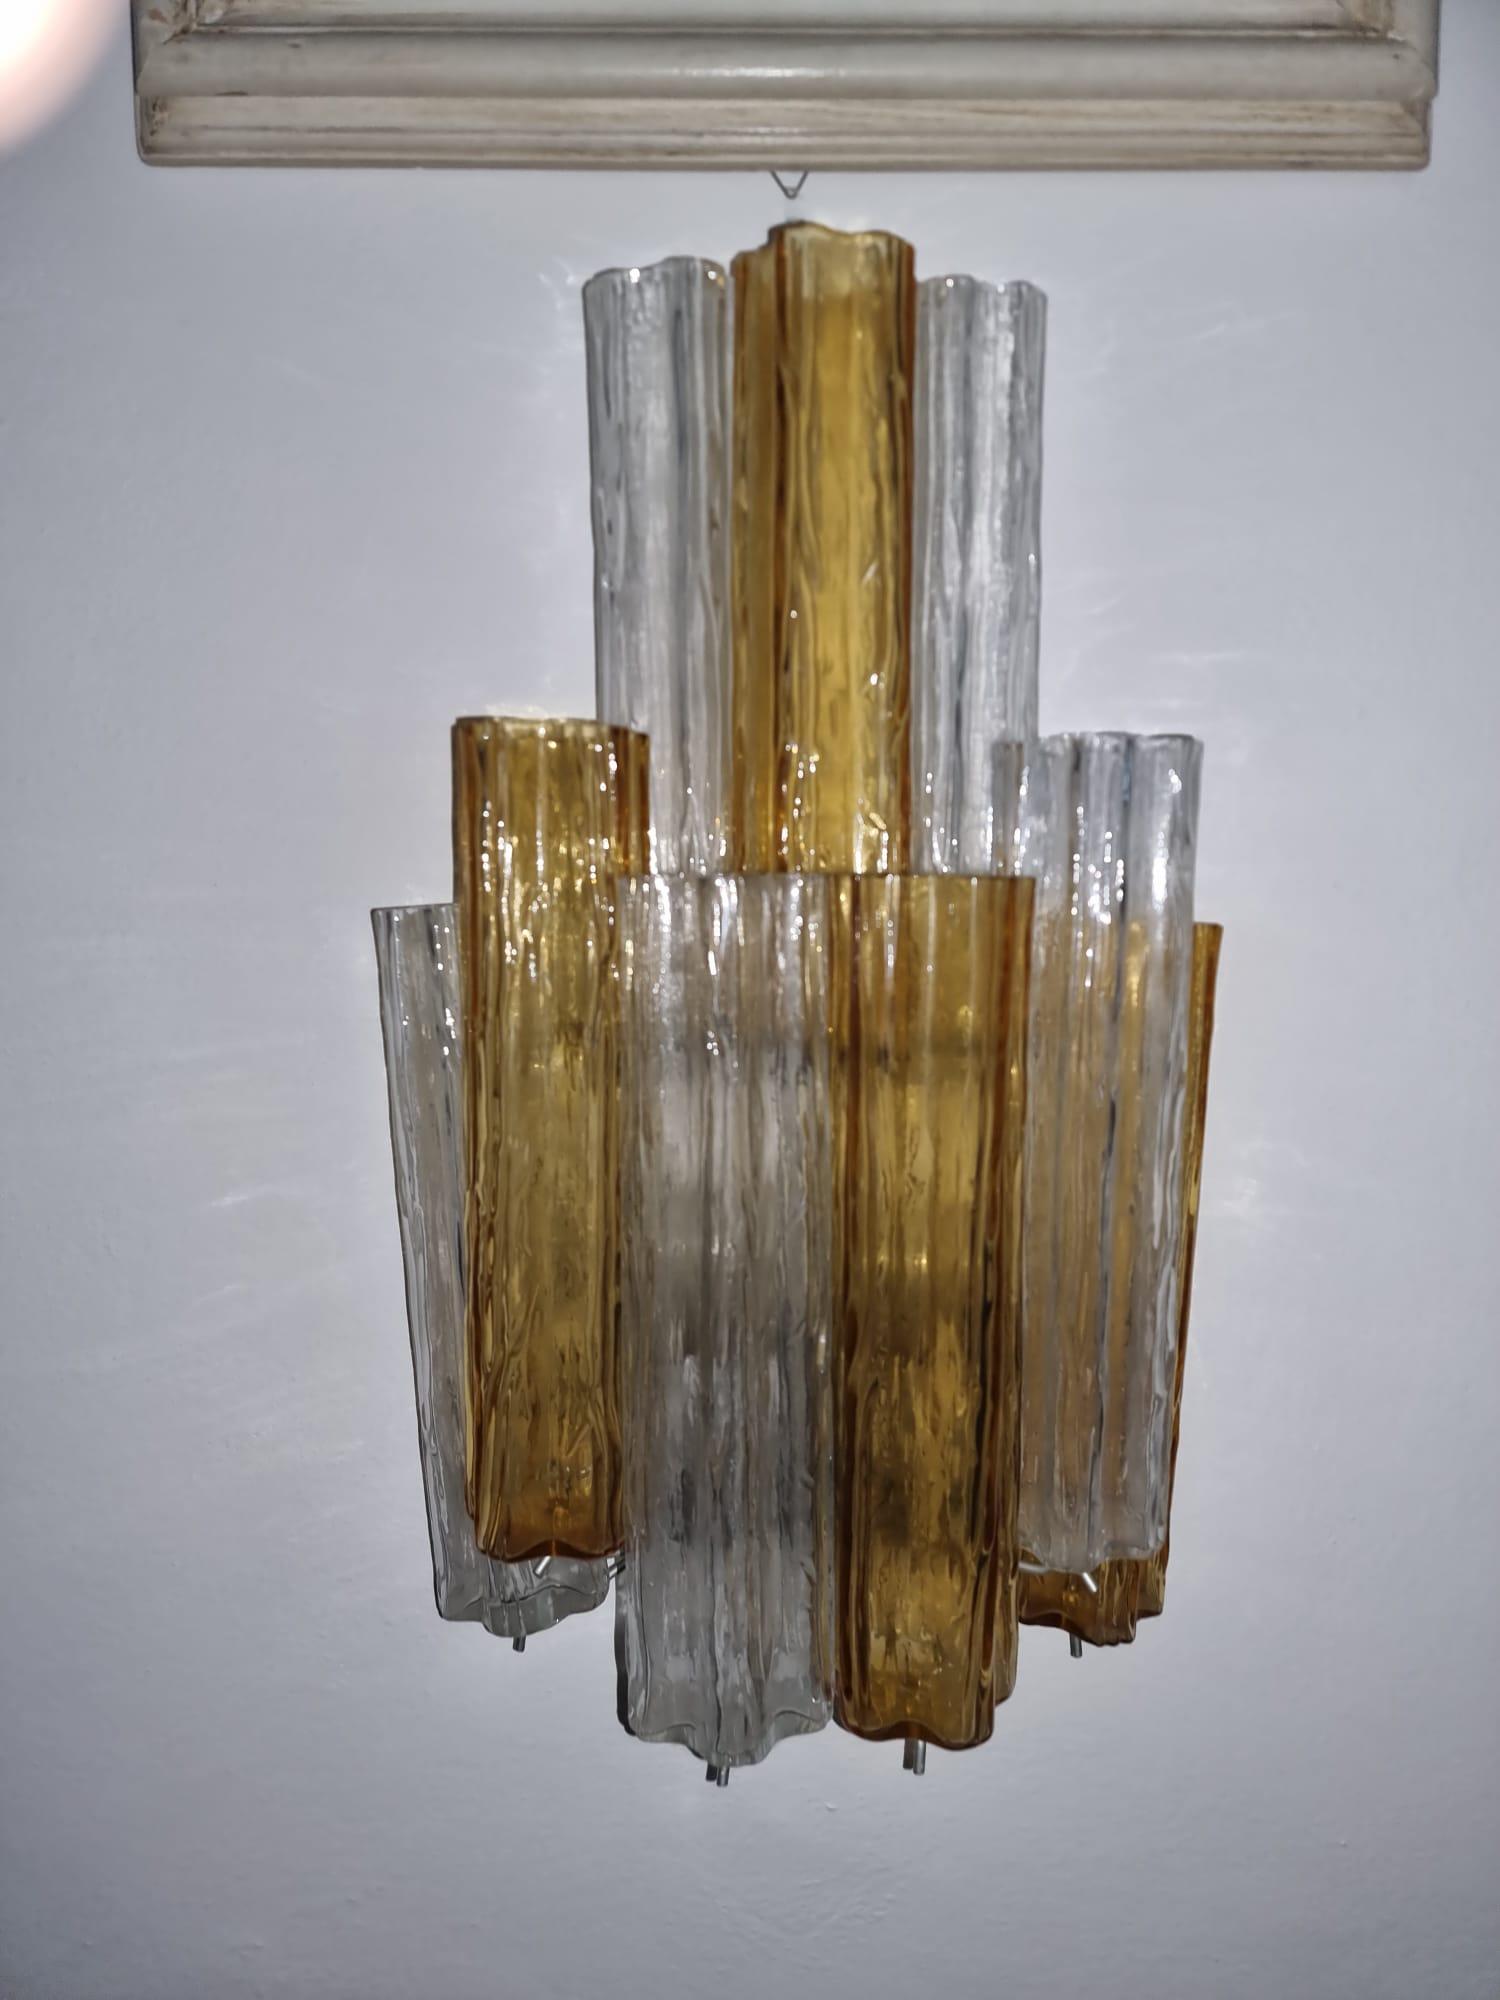 Fünf große Lampen aus Muranoglas mit Applikationen, die aus Elementen bestehen, die aufgrund ihrer Form, die einer Rinde ähnelt, 